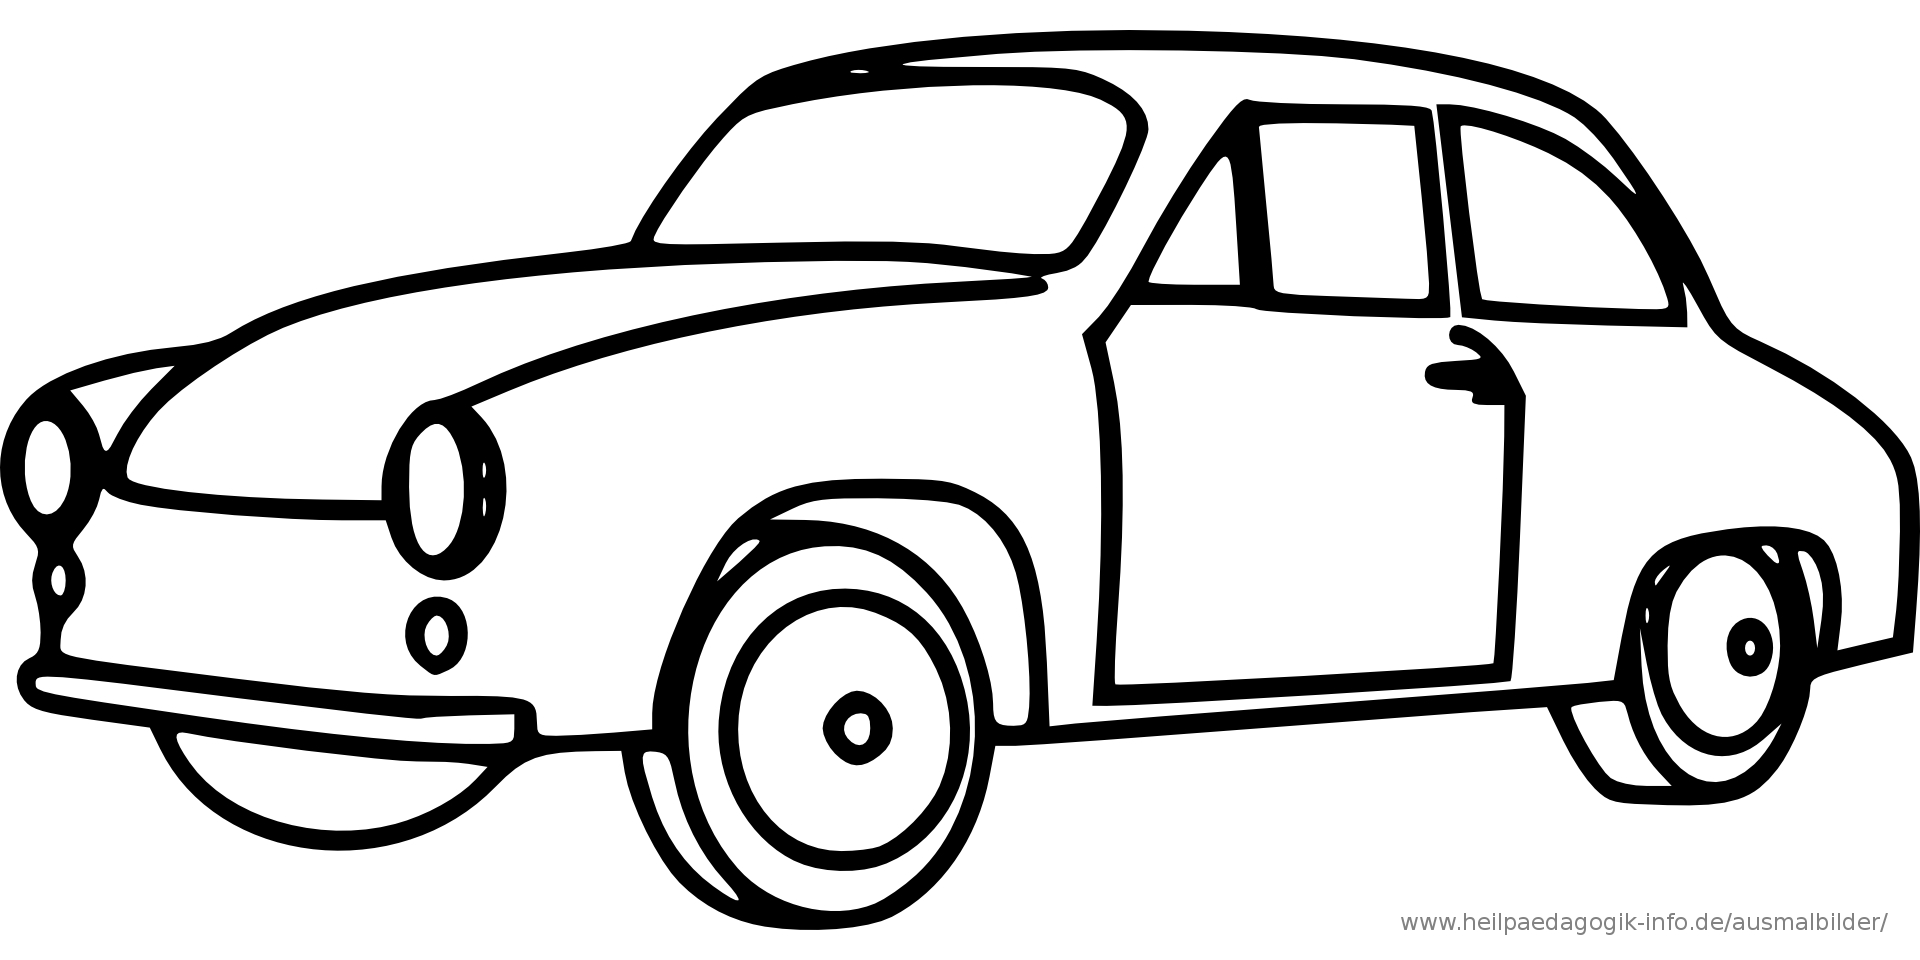 Malvorlage Auto Einfach – Ausmalbilder Für Kinder (Mit verwandt mit Autos Zum Ausmalen